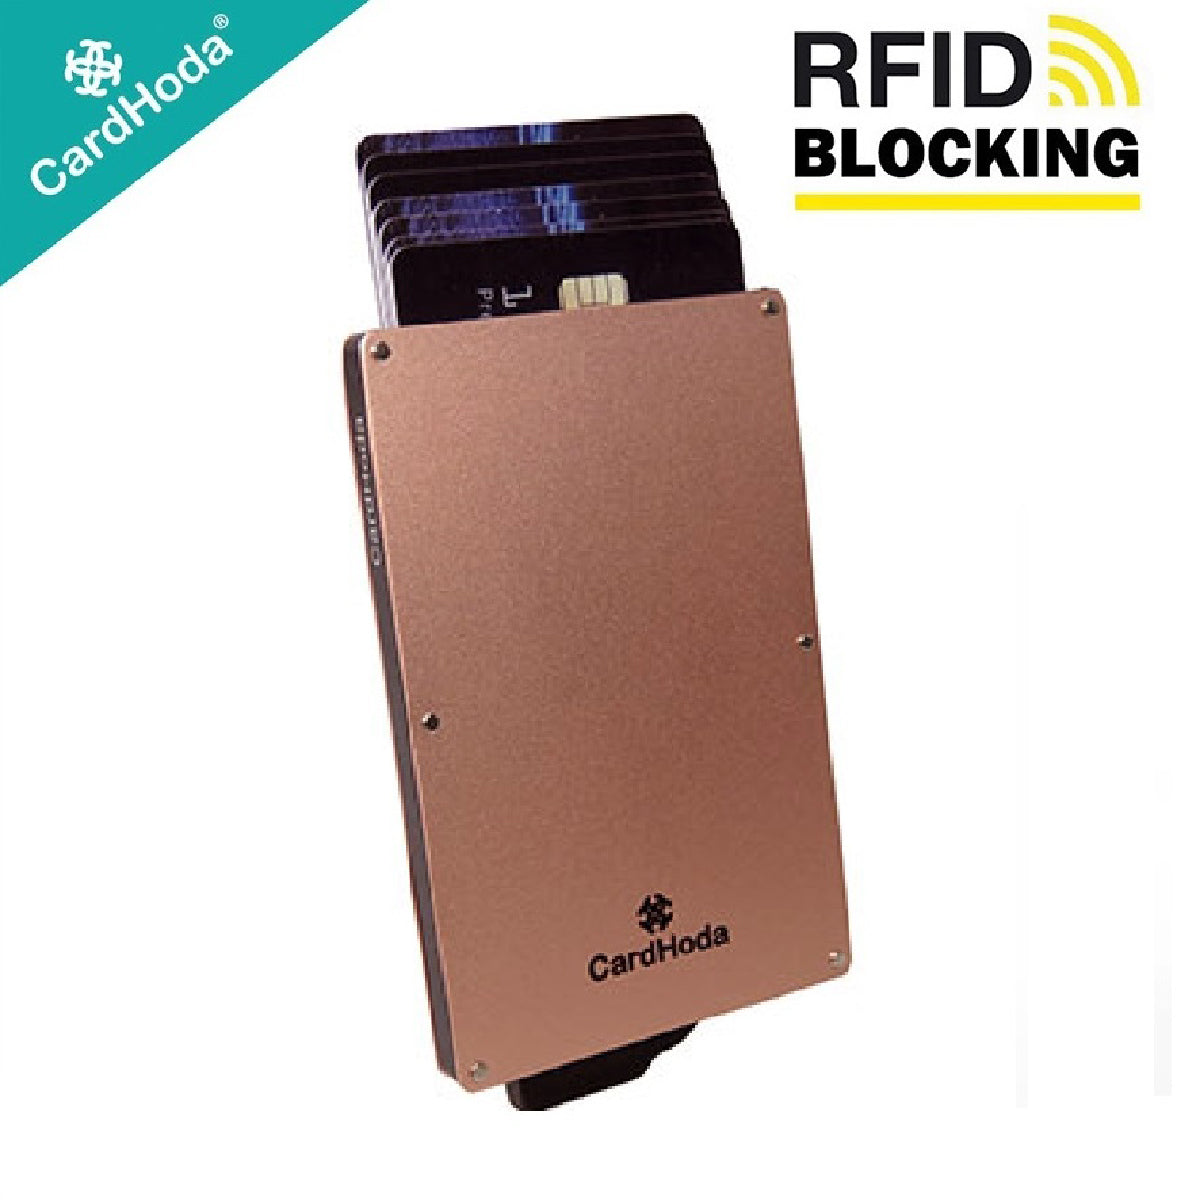 [寄海外] Cardhoda - RFID智能防護鋁盒卡套 (玫瑰金色)